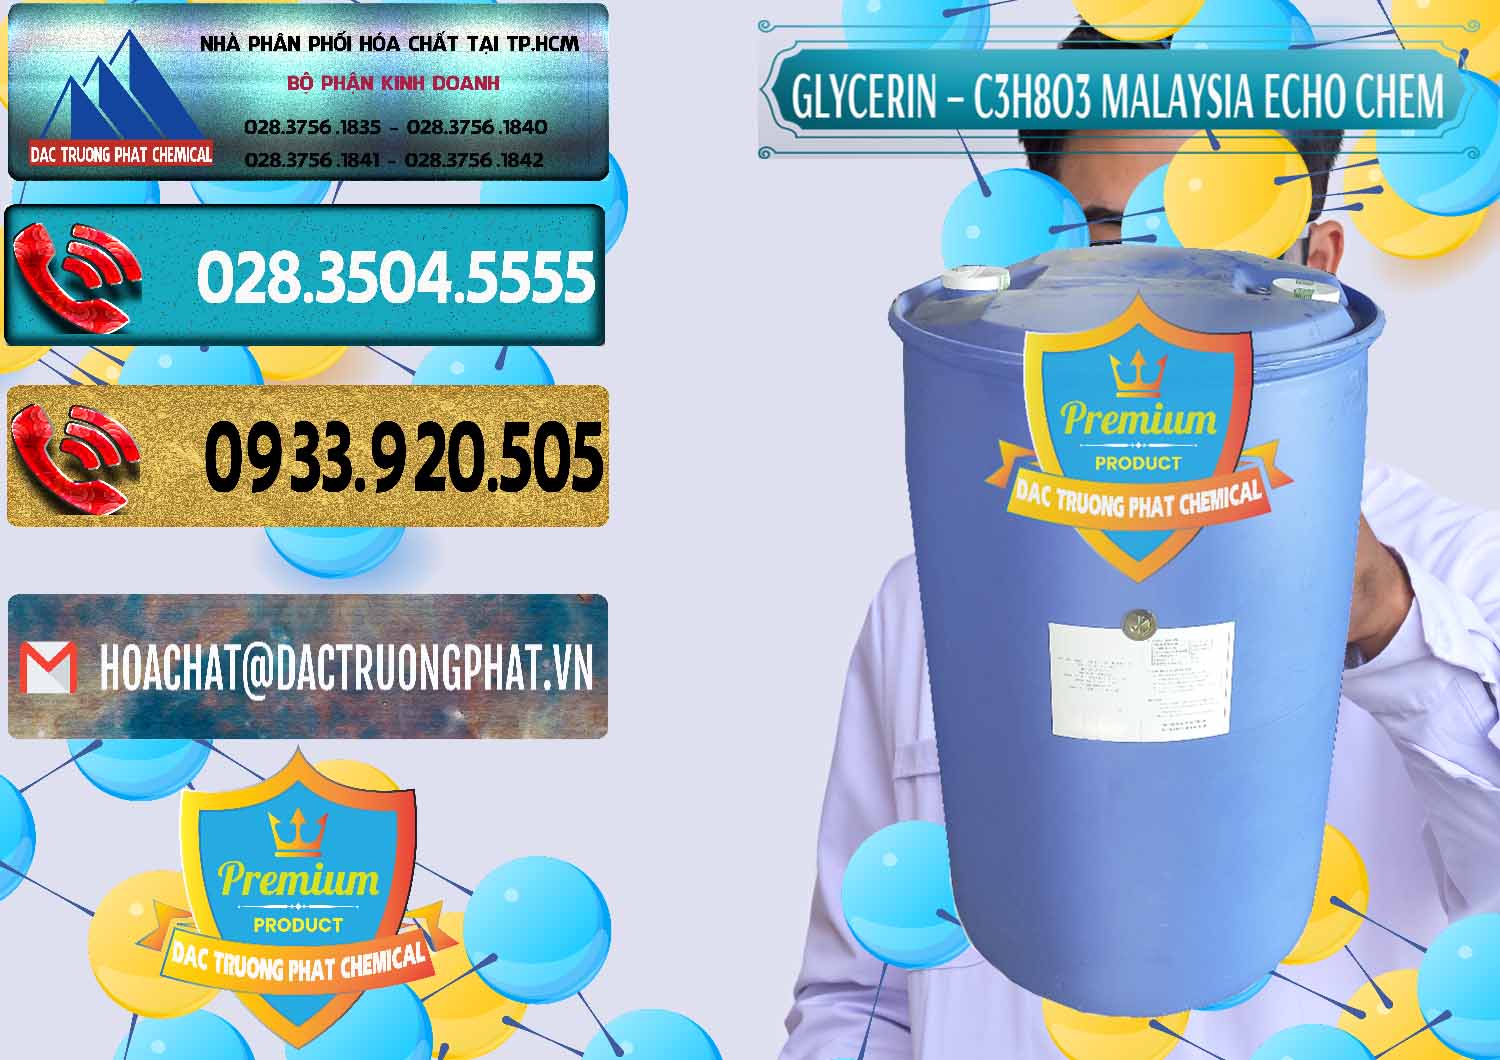 Bán ( cung ứng ) Glycerin – C3H8O3 99.7% Echo Chem Malaysia - 0273 - Nơi chuyên bán _ cung cấp hóa chất tại TP.HCM - hoachatdetnhuom.com